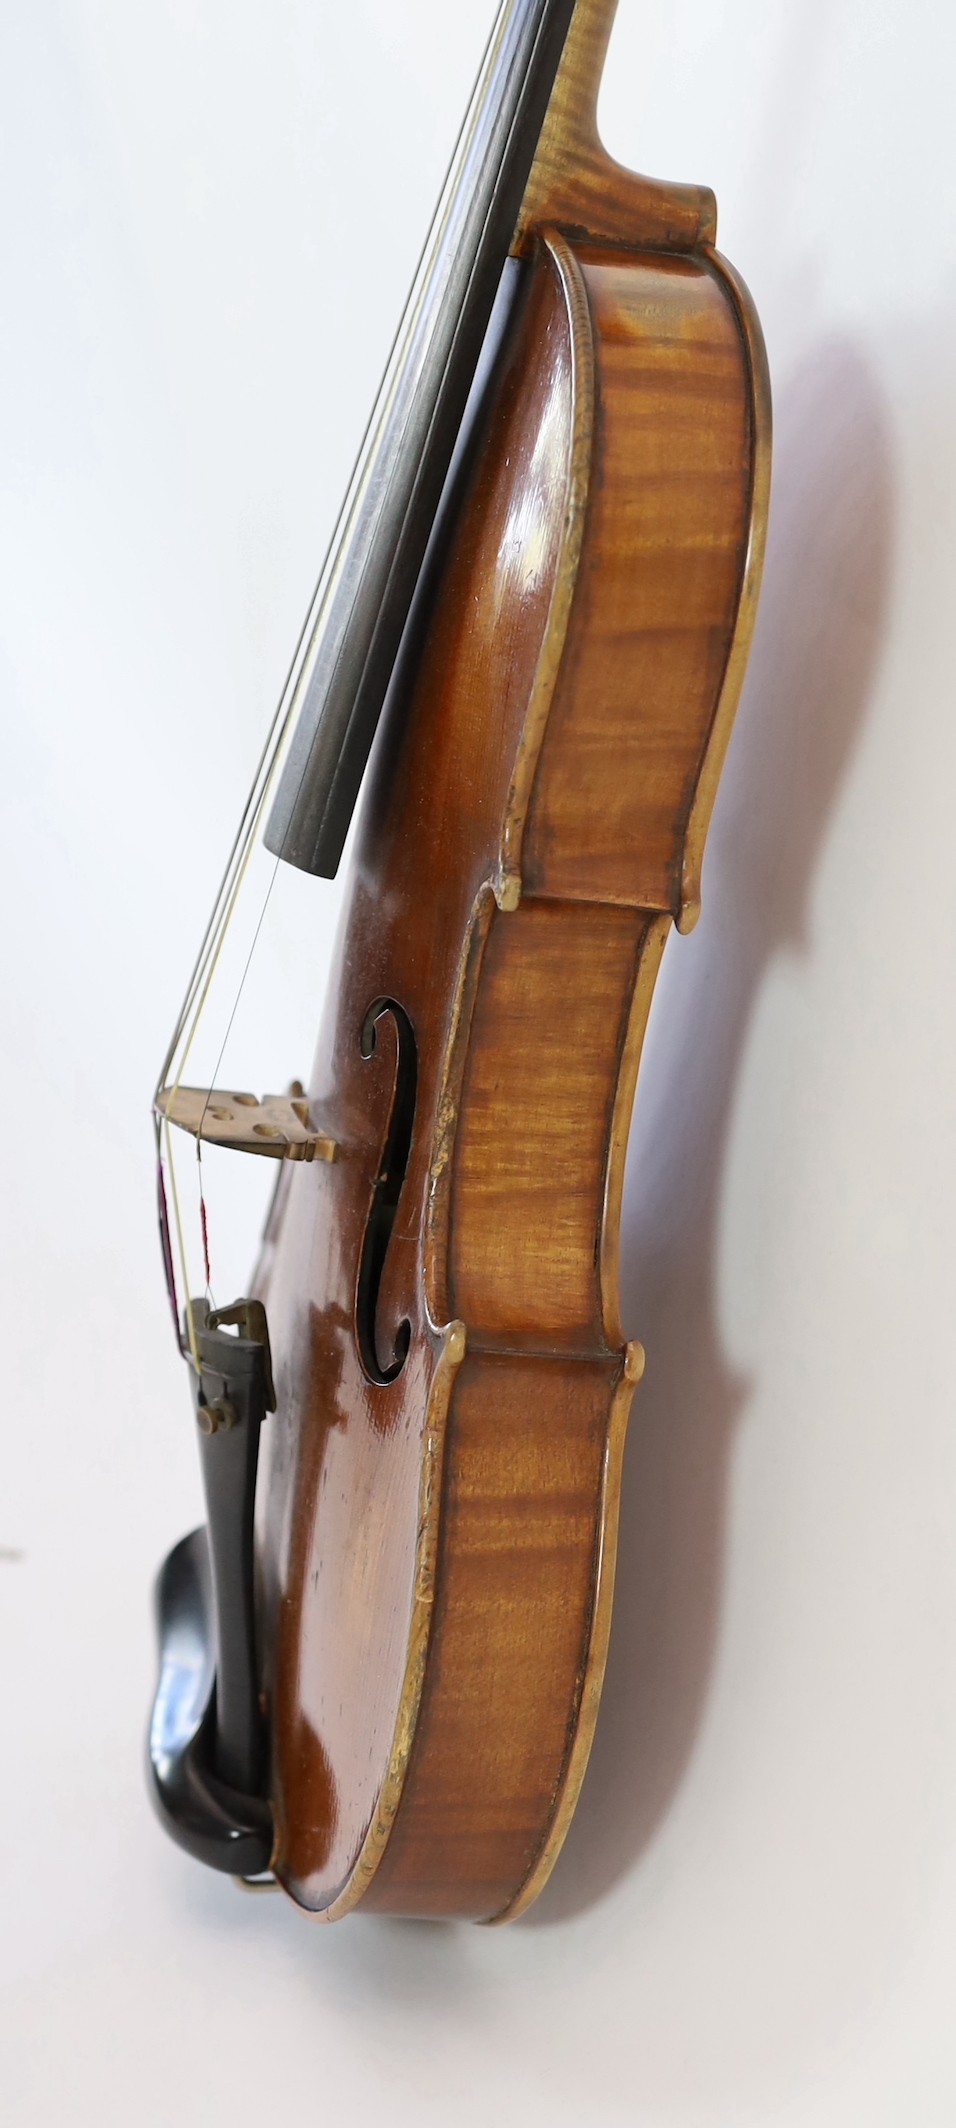 A violin, labelled Leandro Bisiach della Scuola Cremonese fece in Milano 1898, Piazzo del Duomo, length of back 35.6 cm (14in.) cased